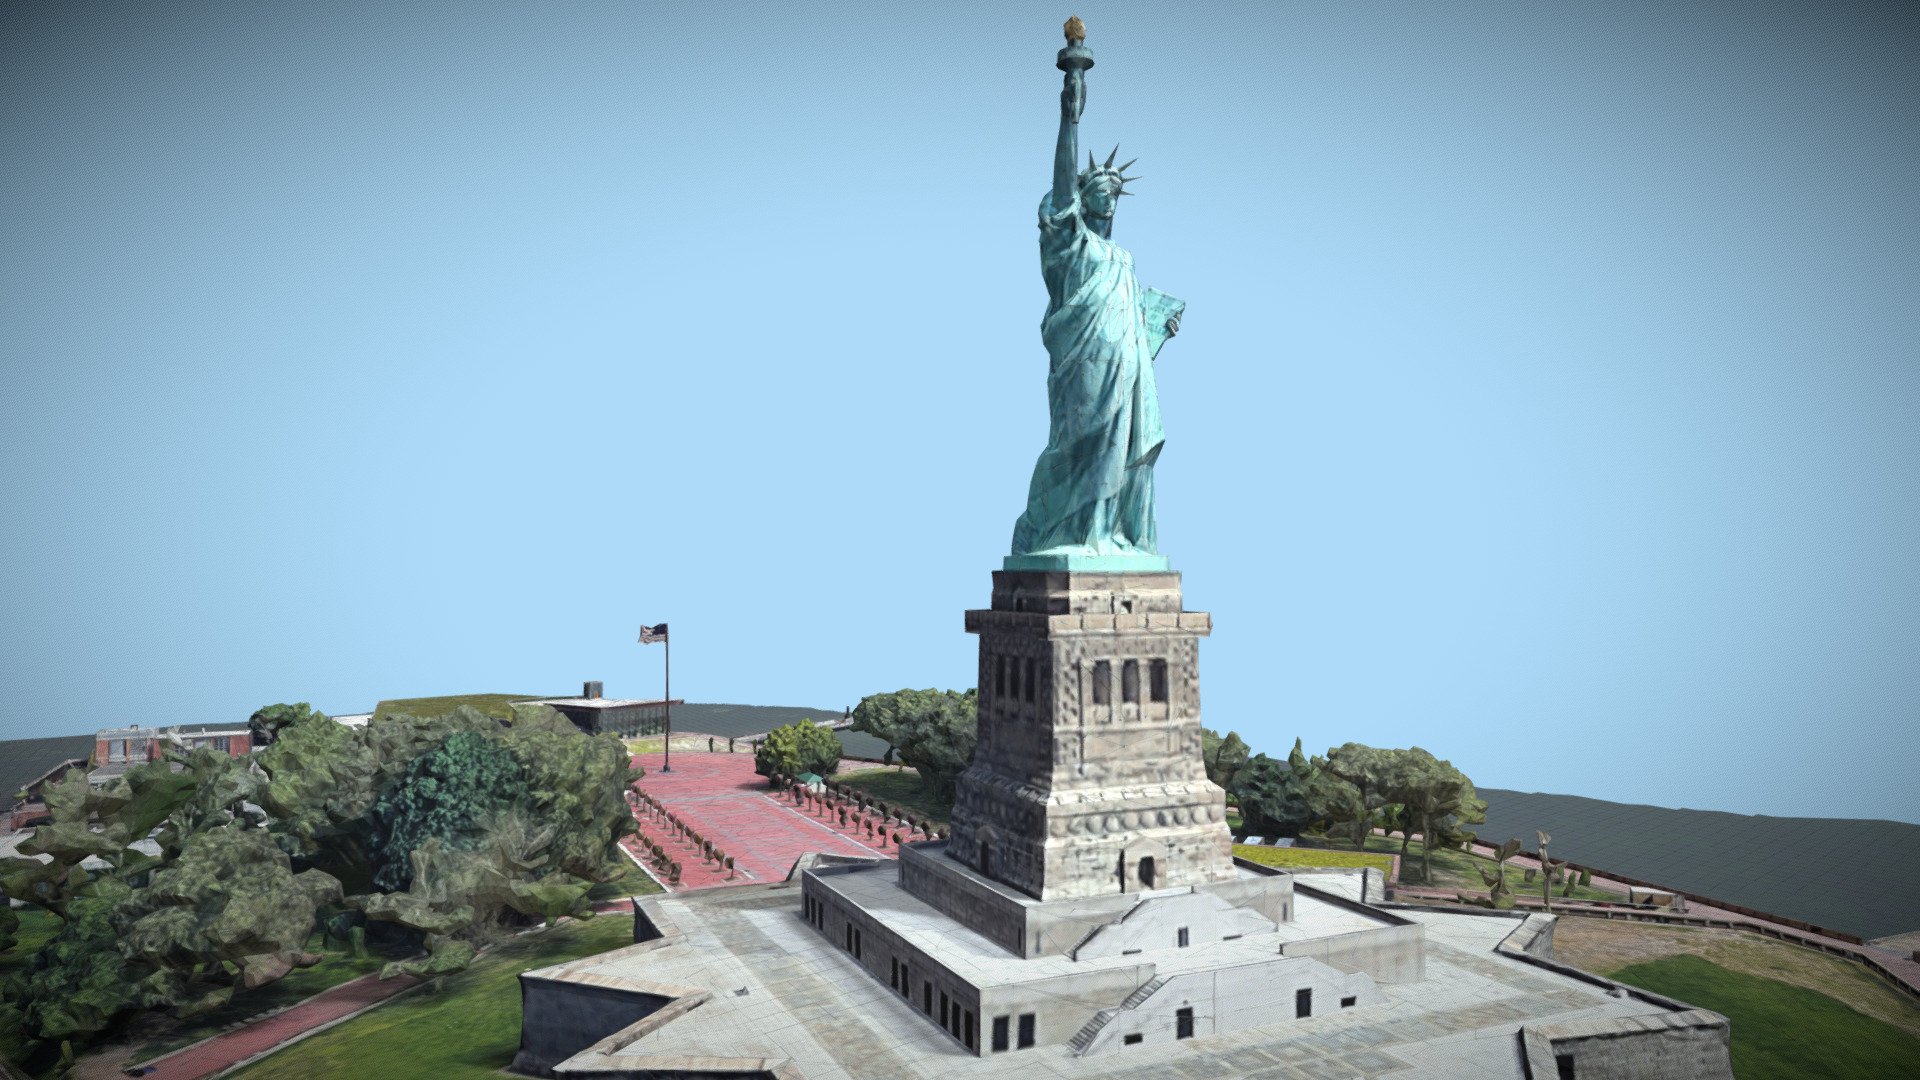 Statue of Liberty, New York, NY, USA